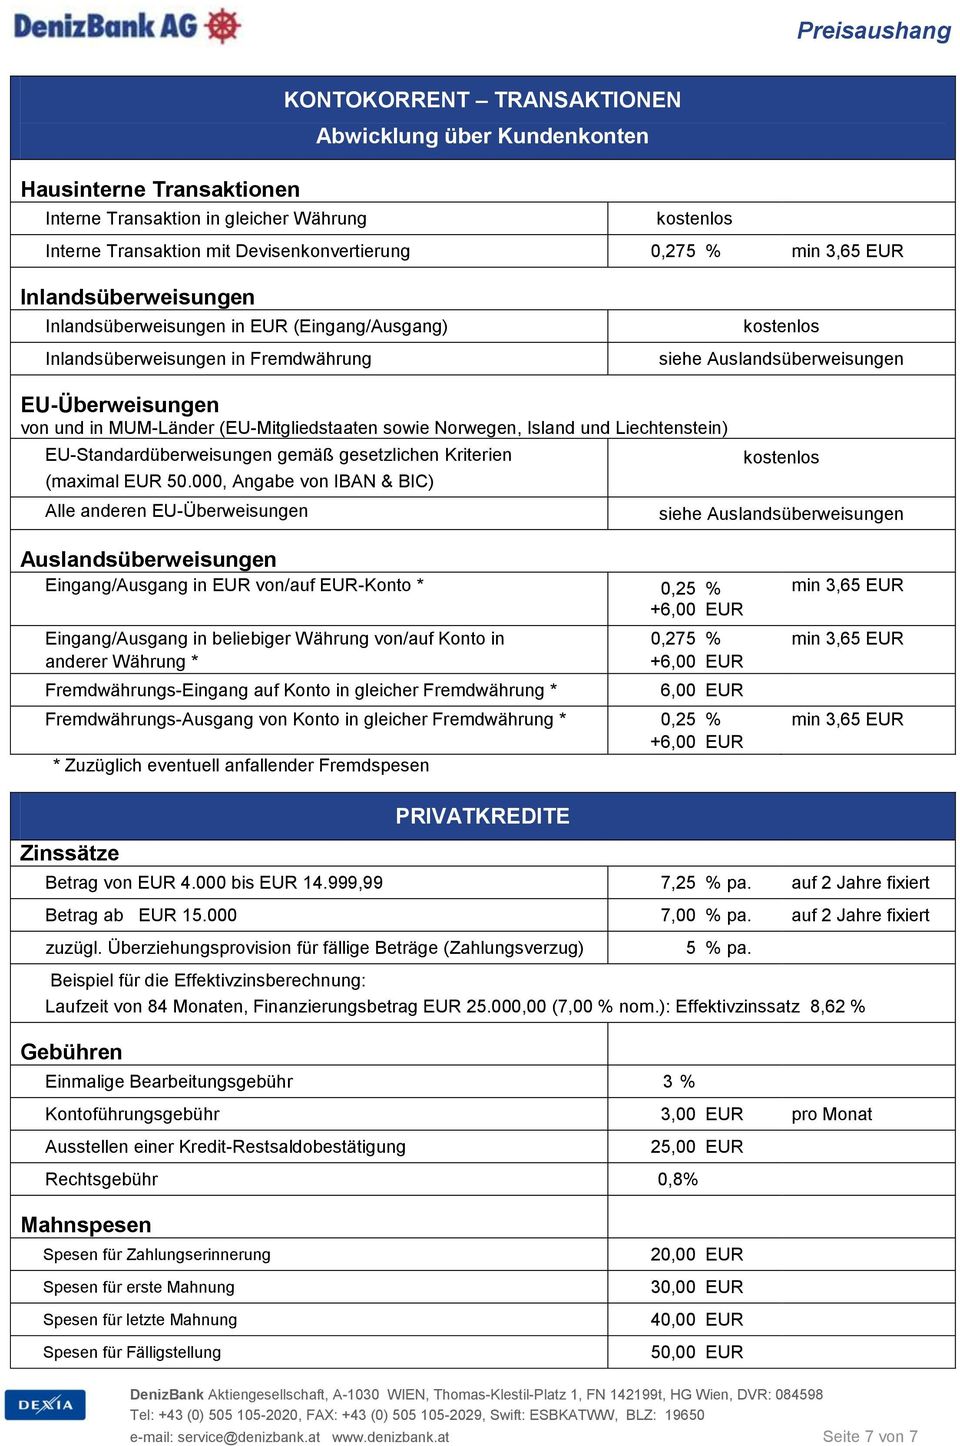 Liechtenstein) EU-Standardüberweisungen gemäß gesetzlichen Kriterien (maximal EUR 50.